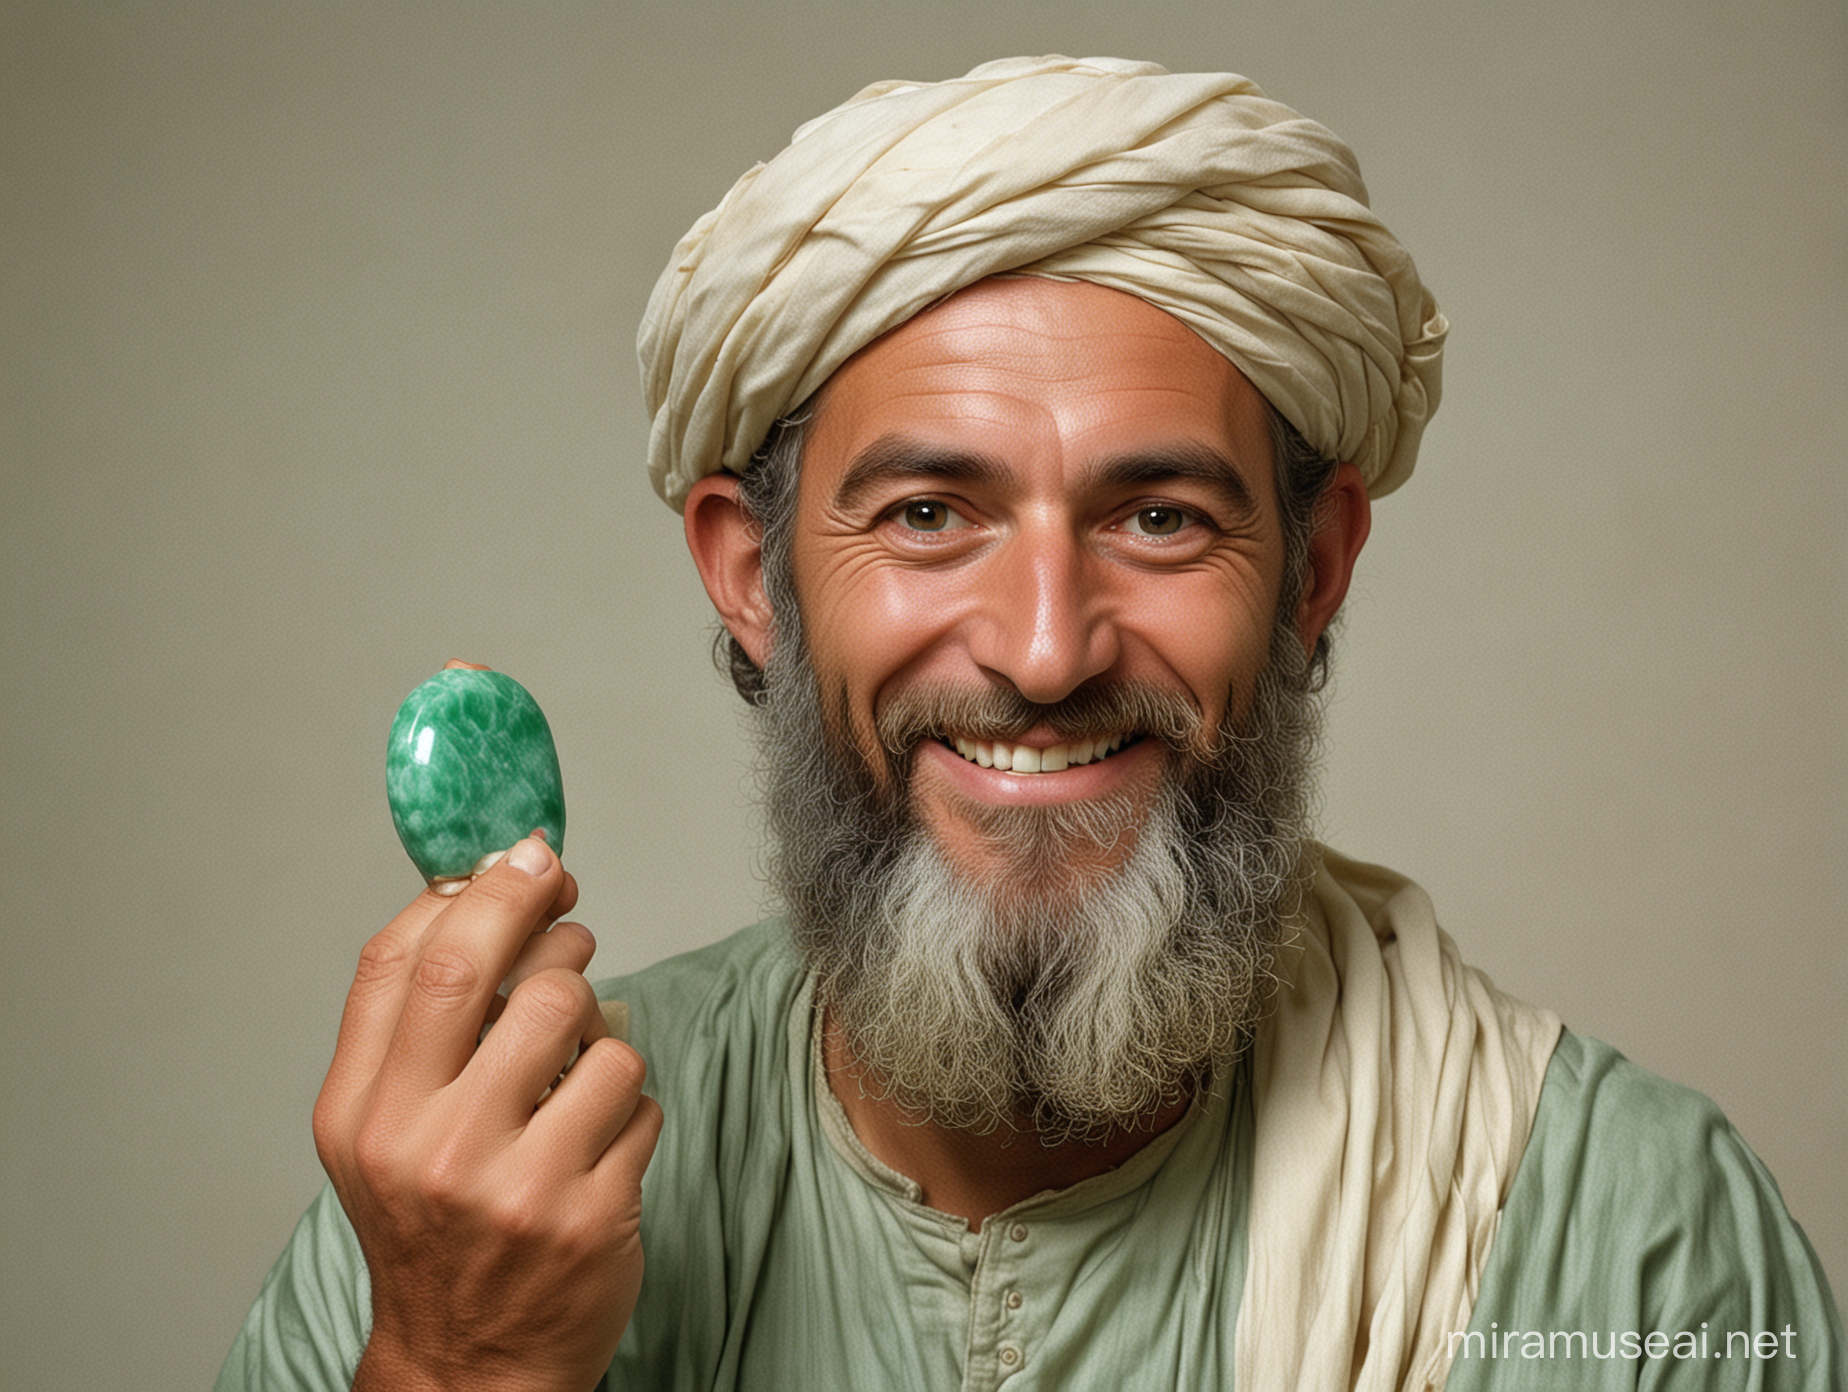 Мужчина еврейской внешности с улыбкой на лице держит в правой руке камень жадеит, седьмой век до нашей эры, 